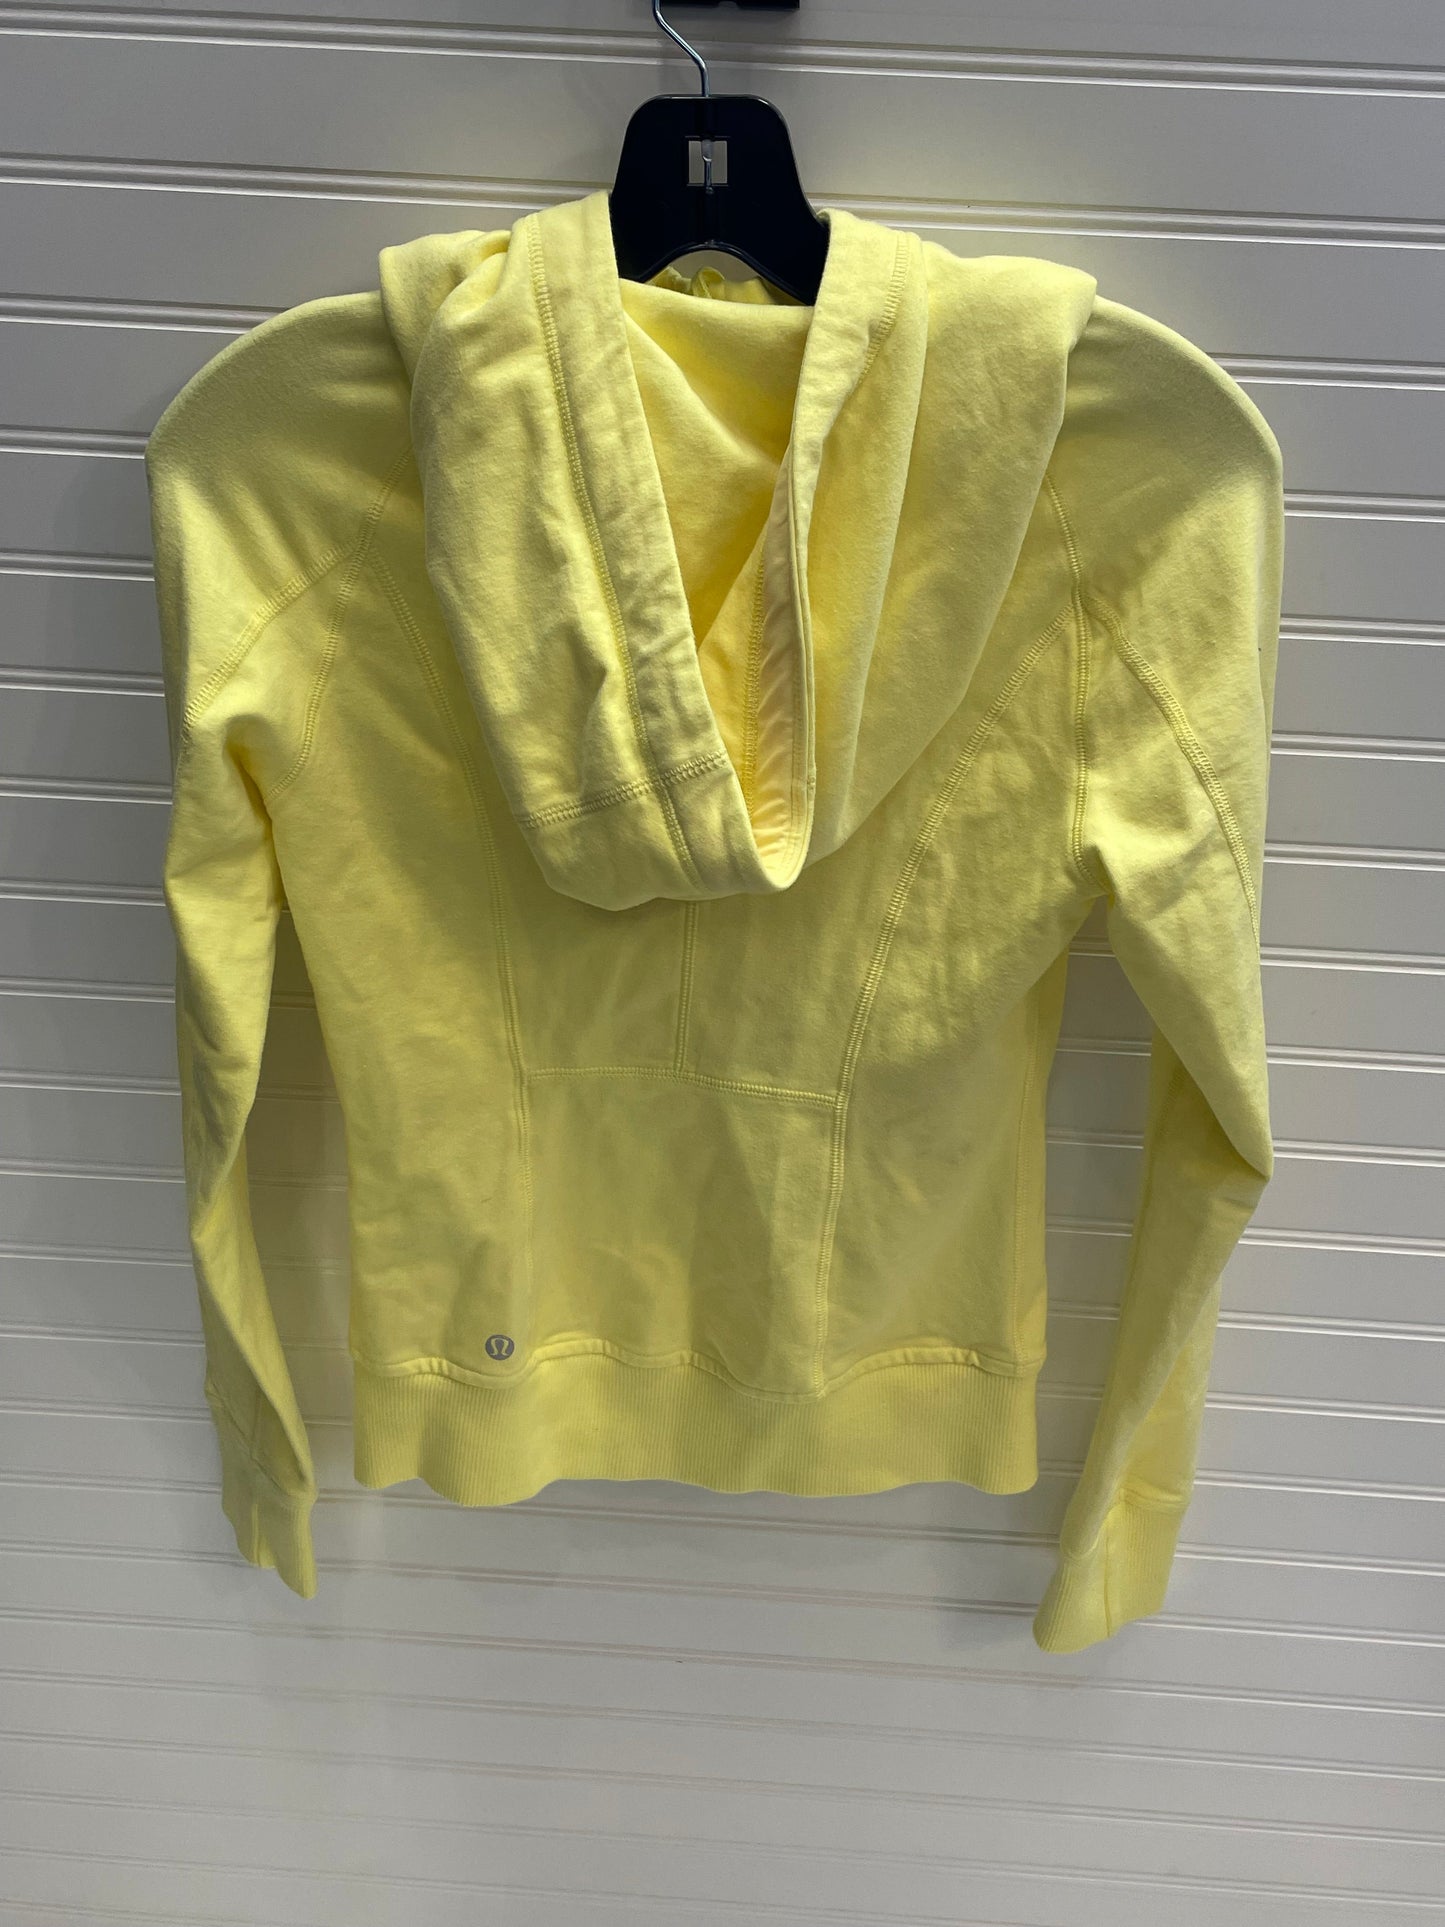 Yellow Athletic Jacket Lululemon, Size 4